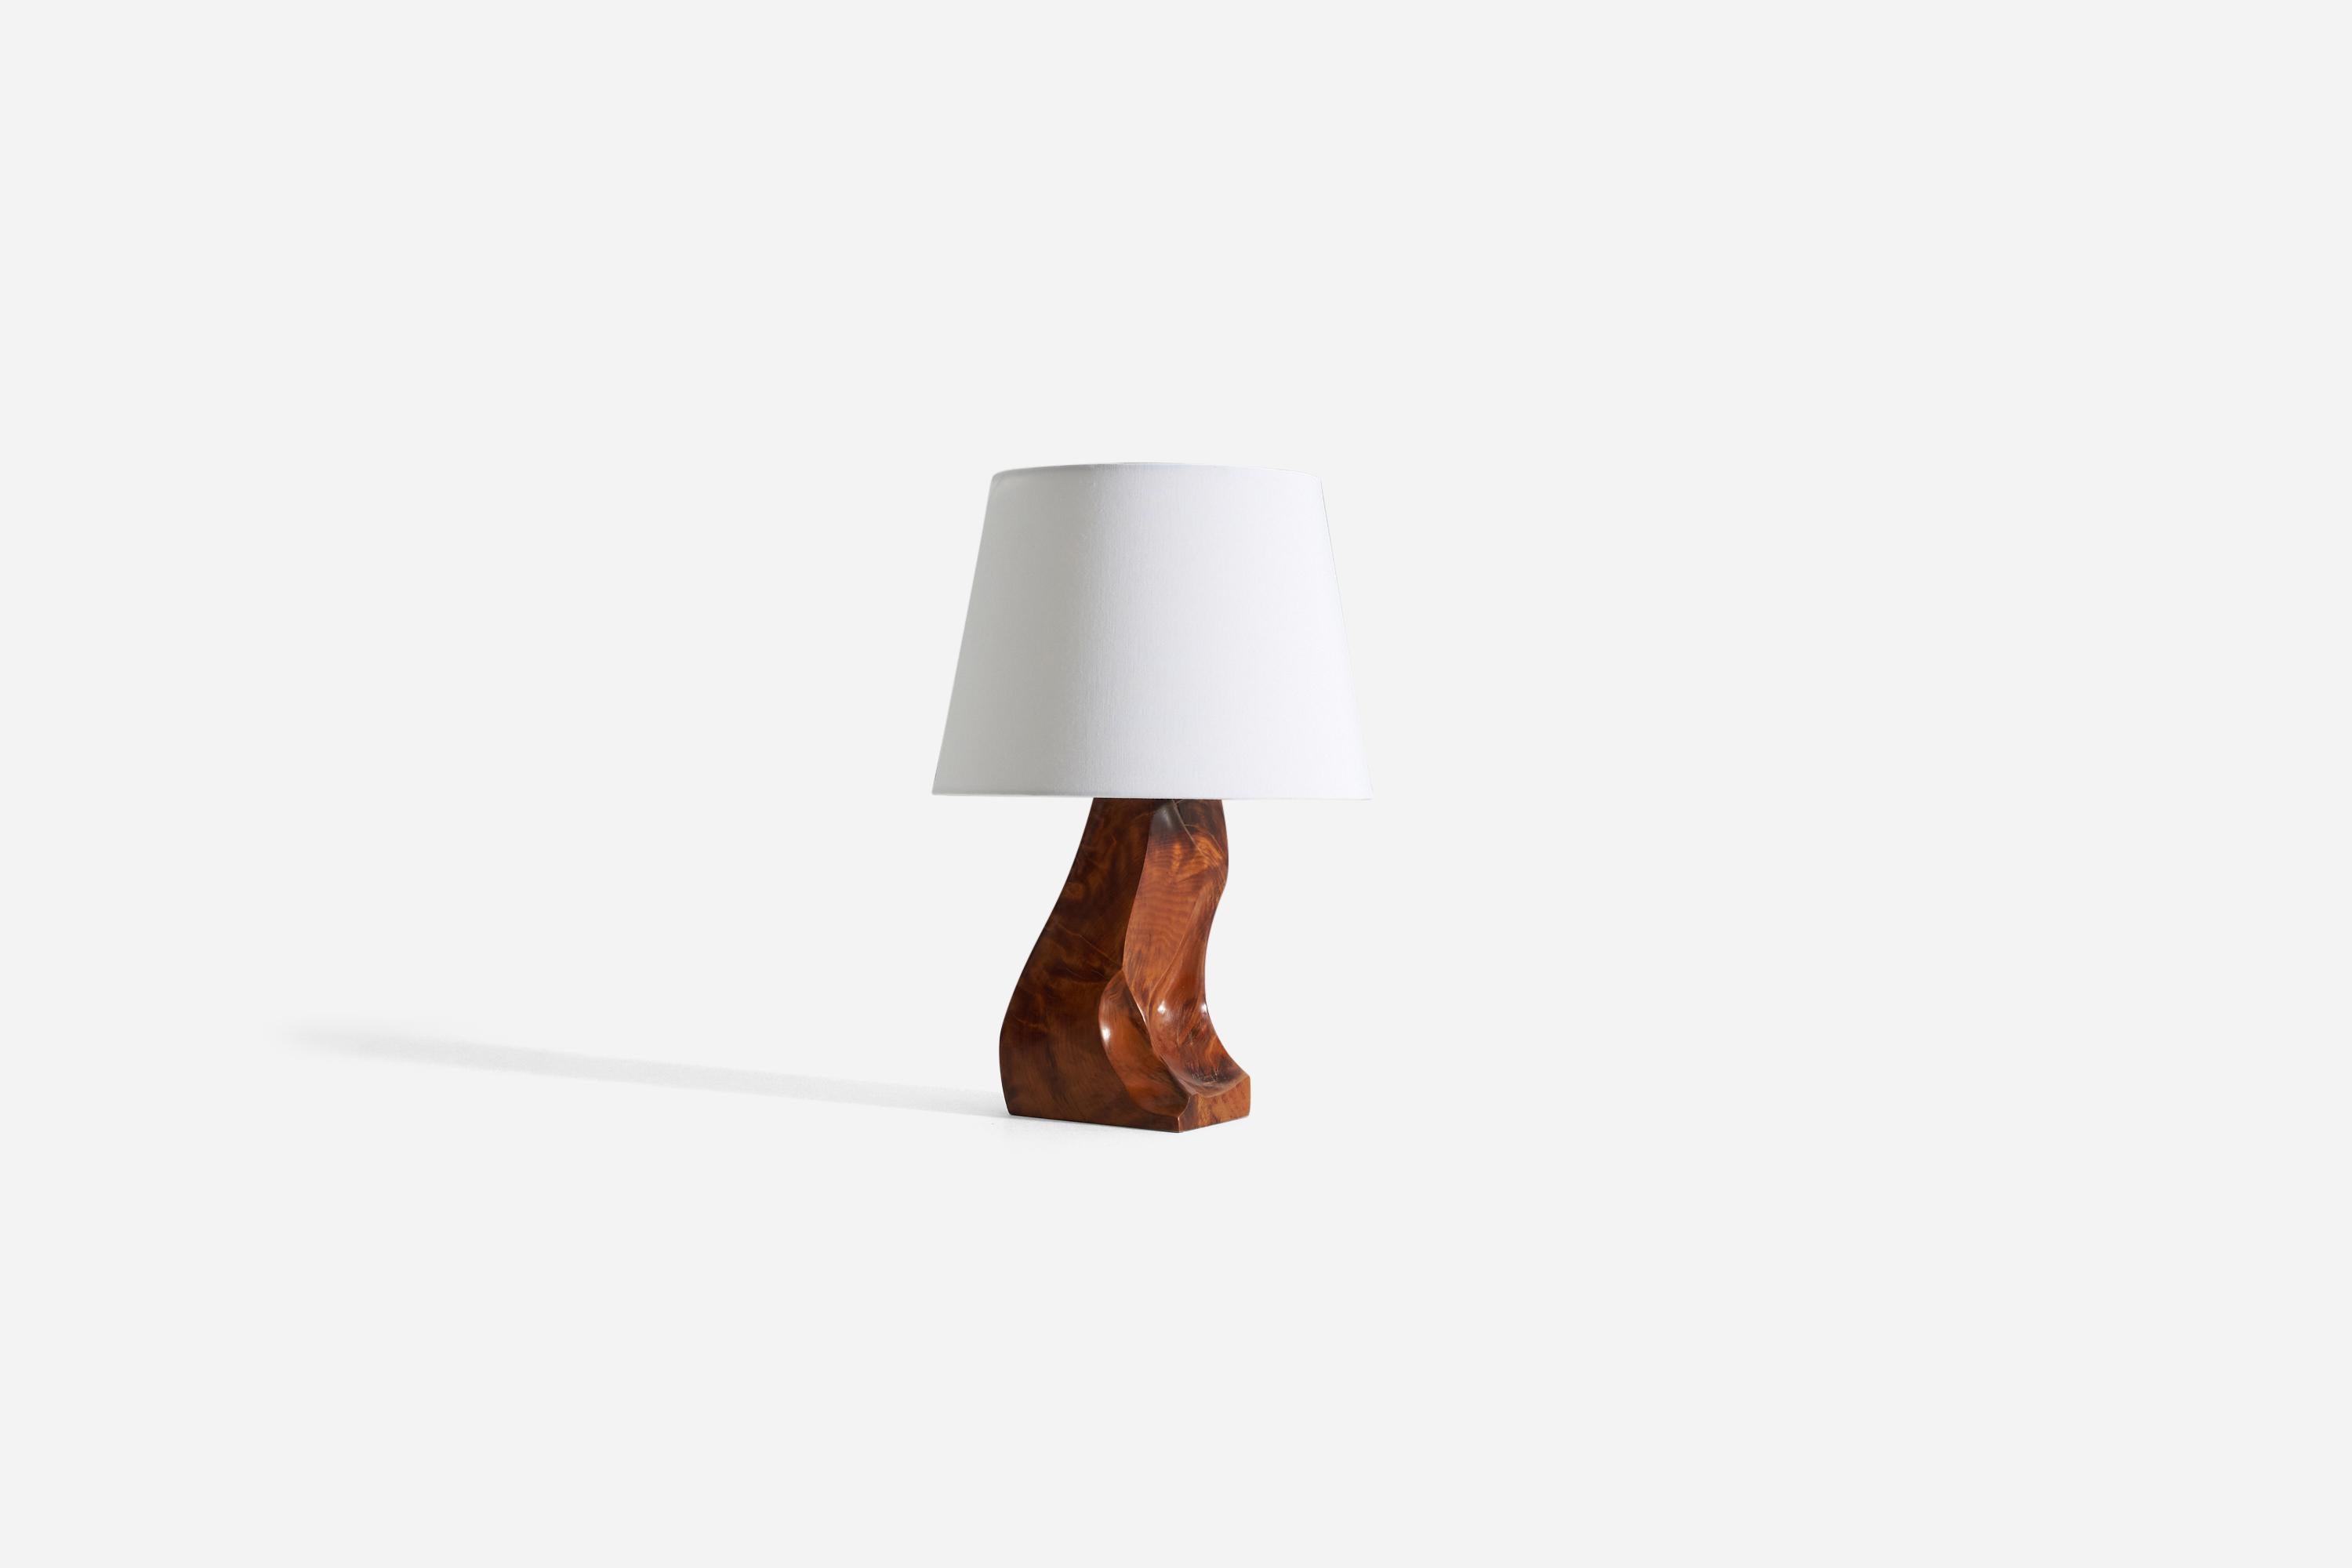 Lampe de table en bois de forme libre. Conçu et produit en Suède, dans les années 1970.

Vendu sans abat-jour. Les dimensions indiquées dans la liste ne comprennent pas l'abat-jour.
Pour référence :
Dimensions de la lampe avec abat-jour H 17.5